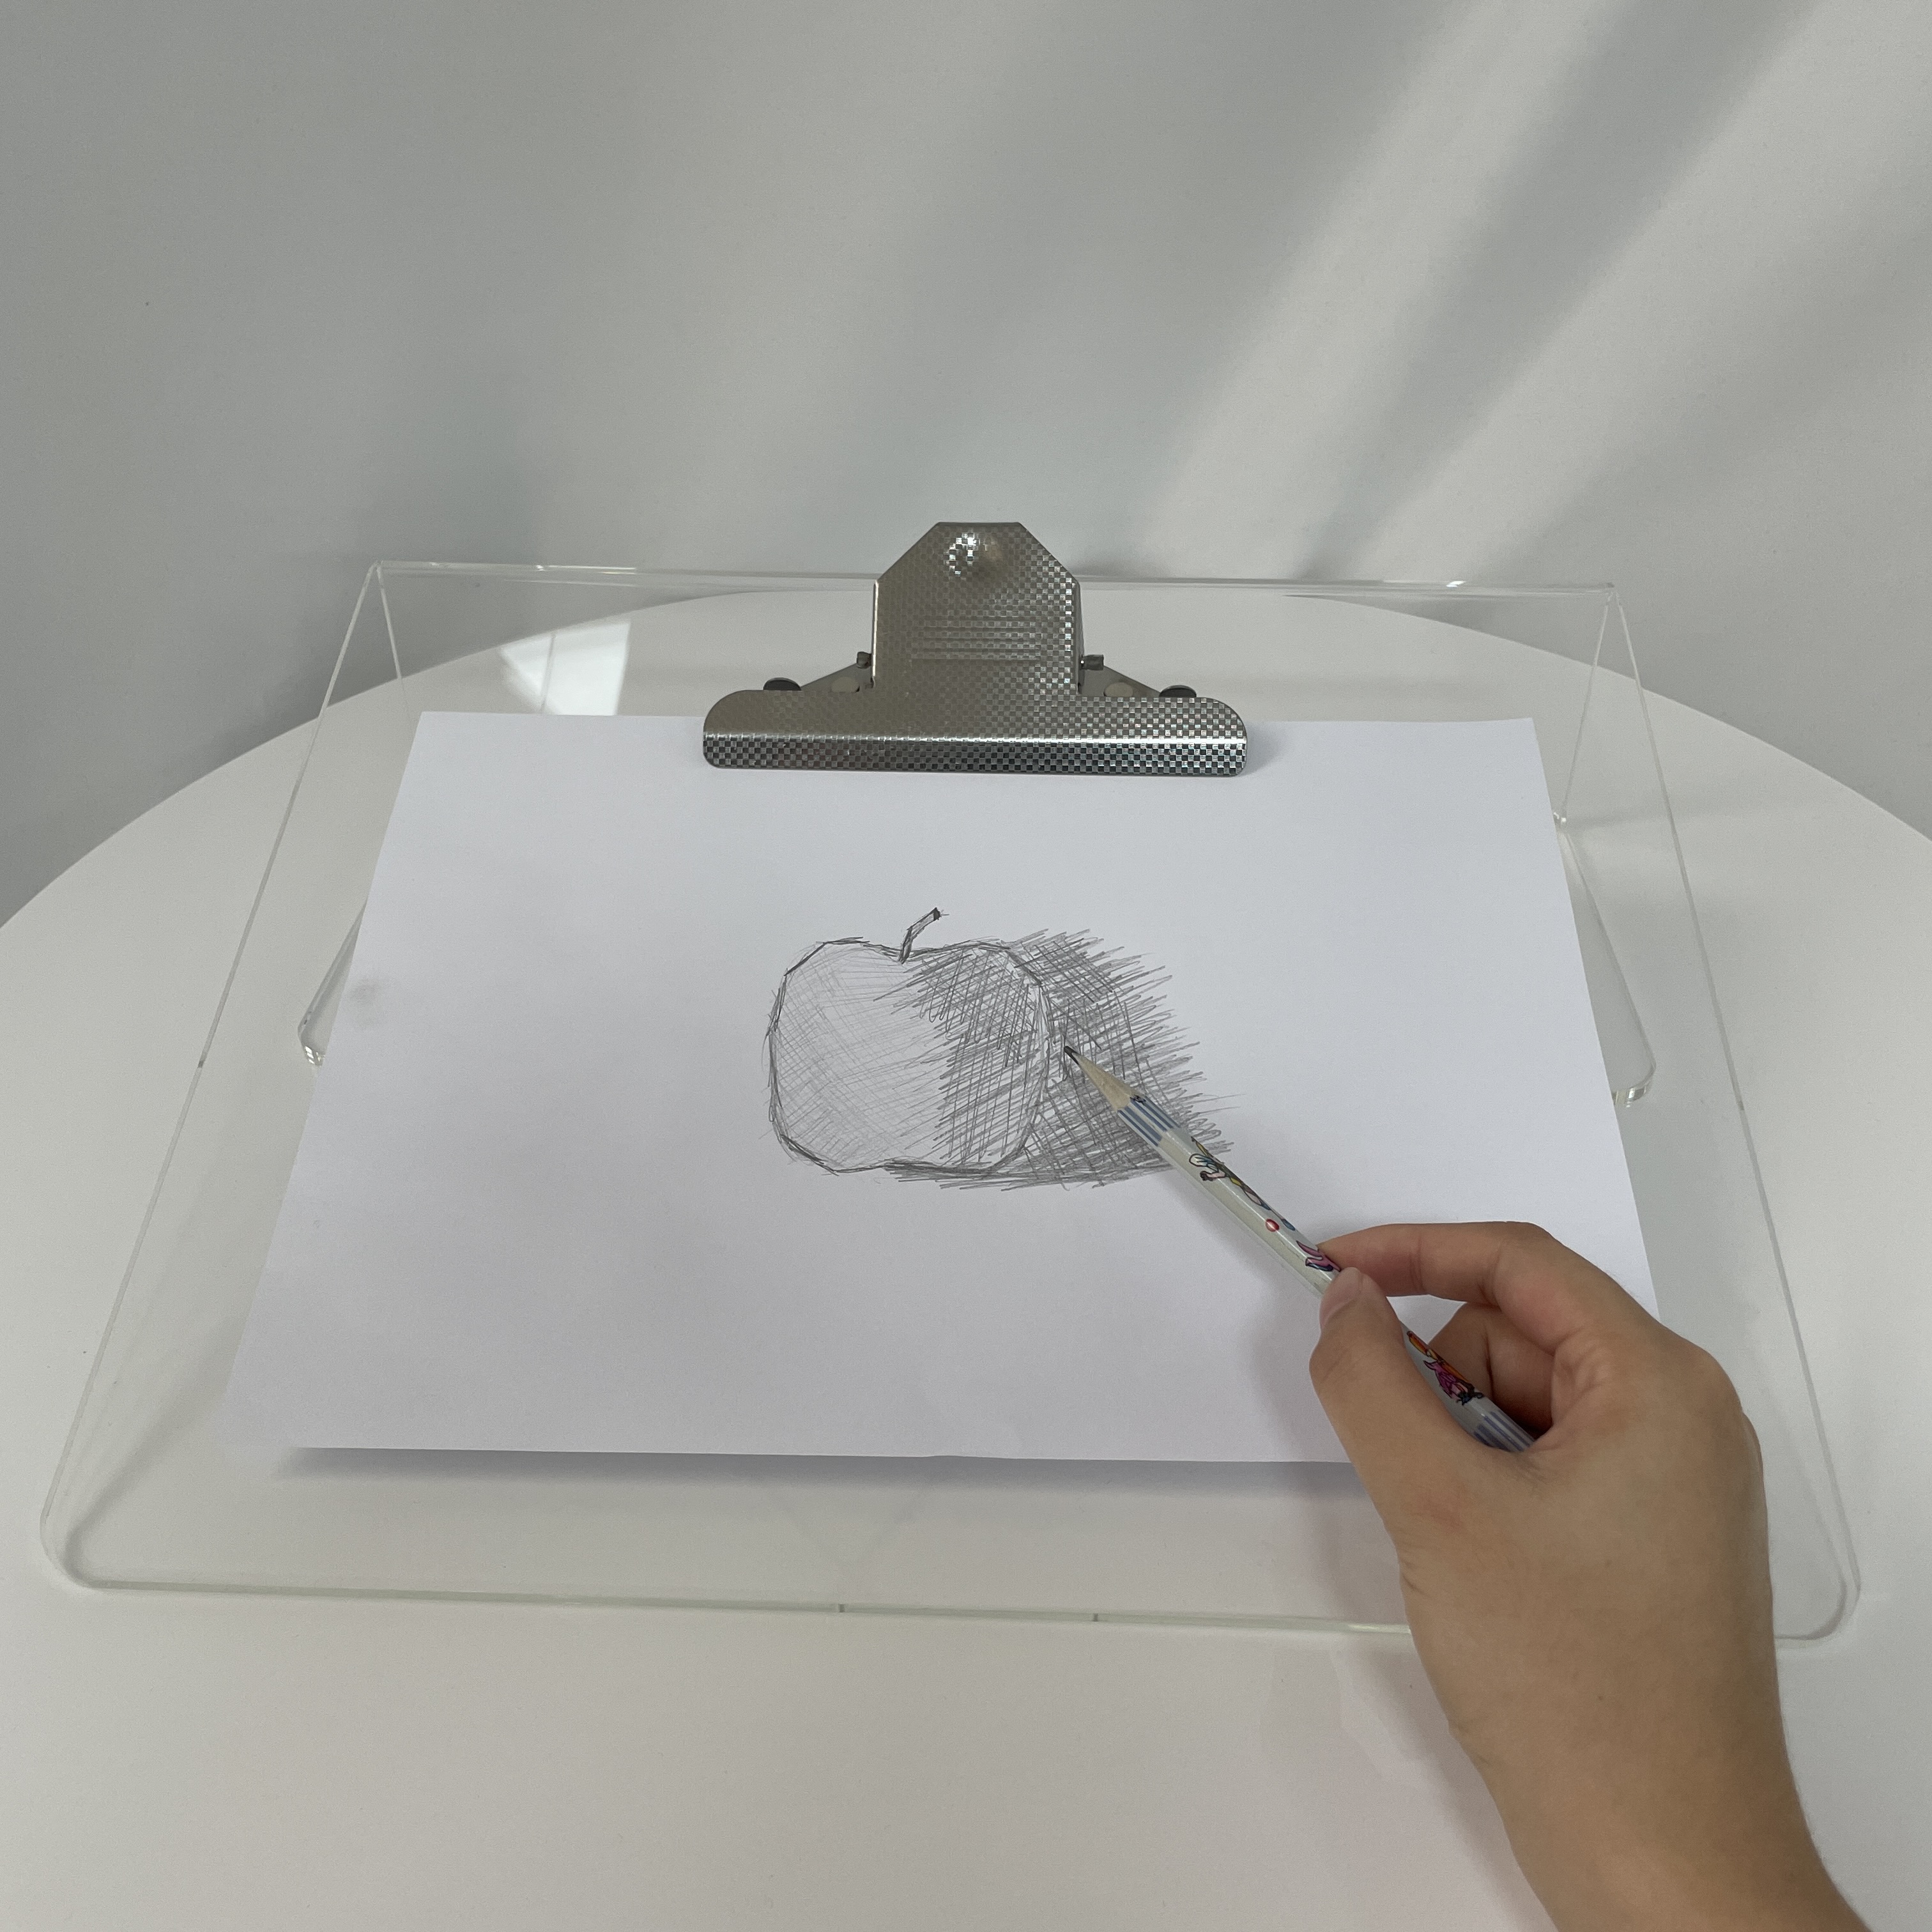 مخصص جاف محو سطح المكتب المنزل المدرسة السبورة التفاعلية للأطفال لوحة الكتابة السحرية الأطفال الاكريليك مجلس للكتابة